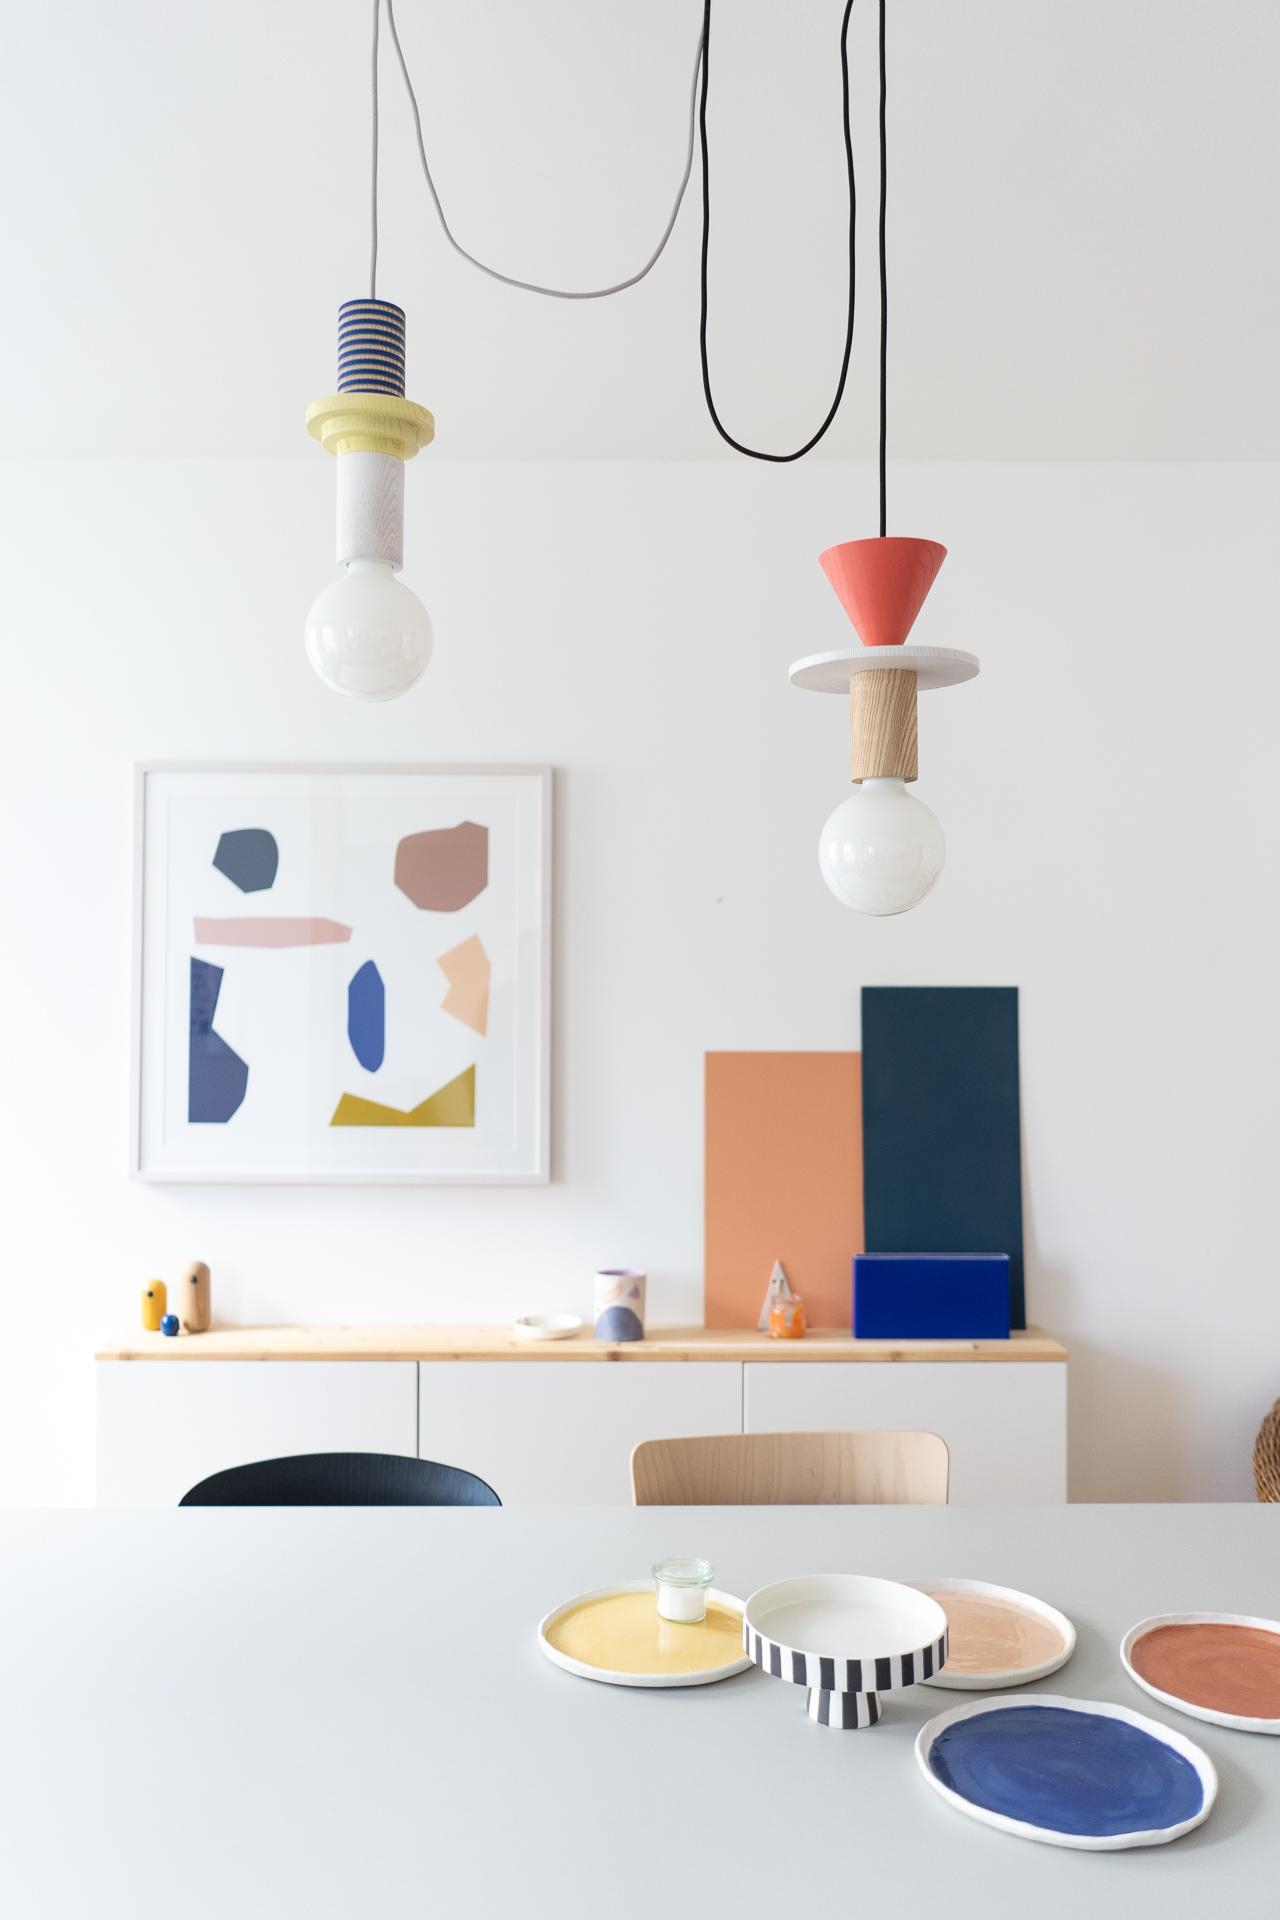 der beste Kauf für die Wohnung: diese zwei wunderschönen Lampen von schneid studio. Eigentlich sollten sie in die Küche